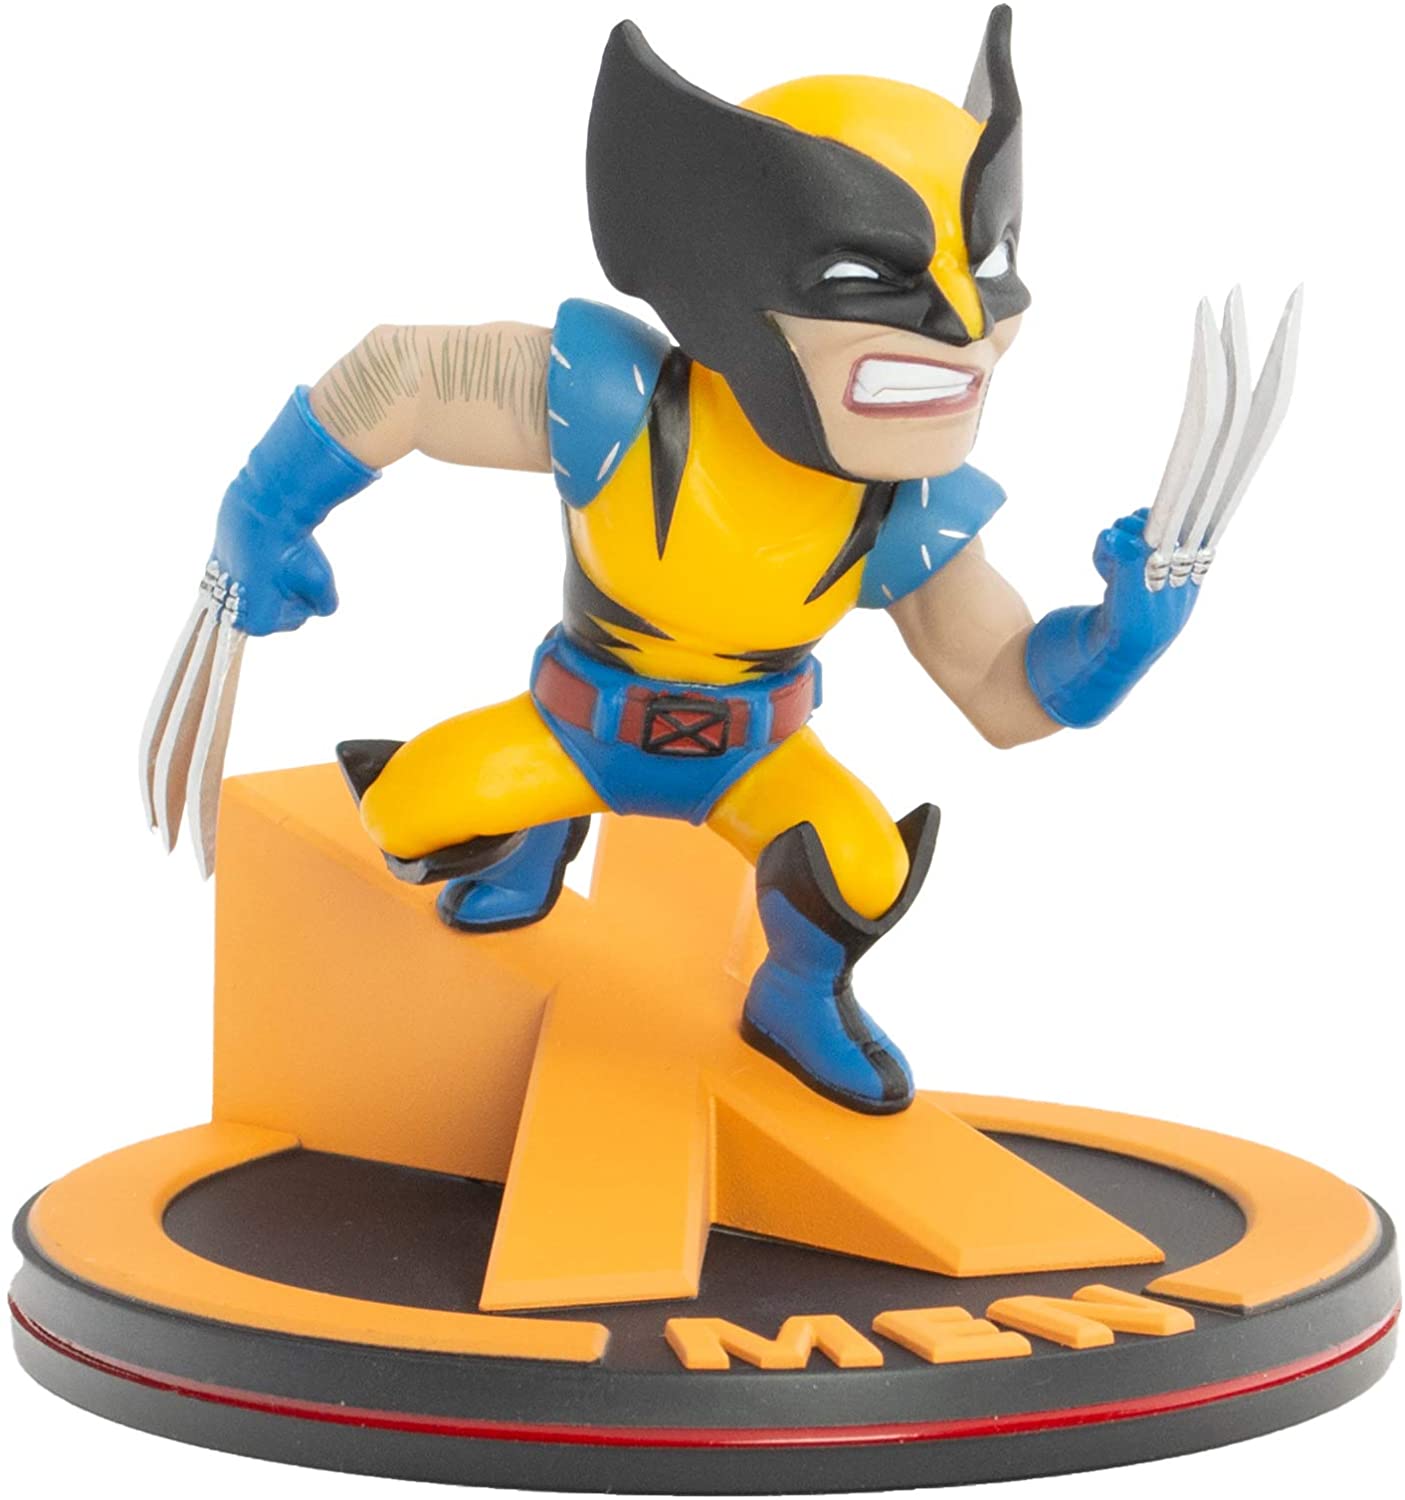 Wolverine - X-Men - Marvel - Q-Fig - Quantum Mechanix